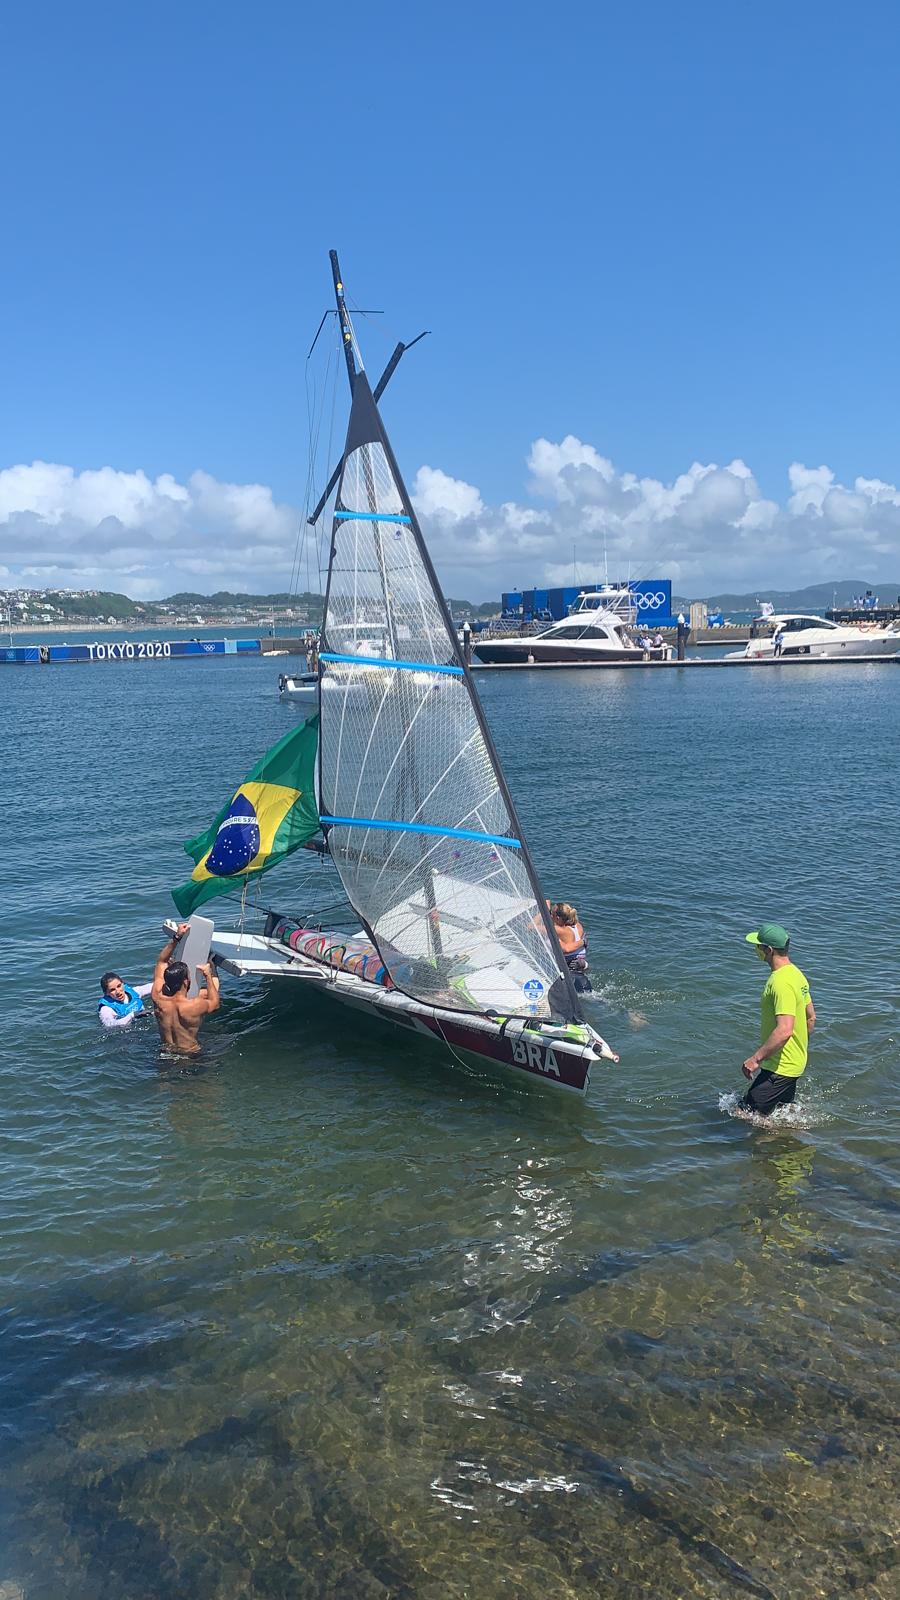 巴西帆船赛选手庆祝夺冠时翻船 2人双双落水